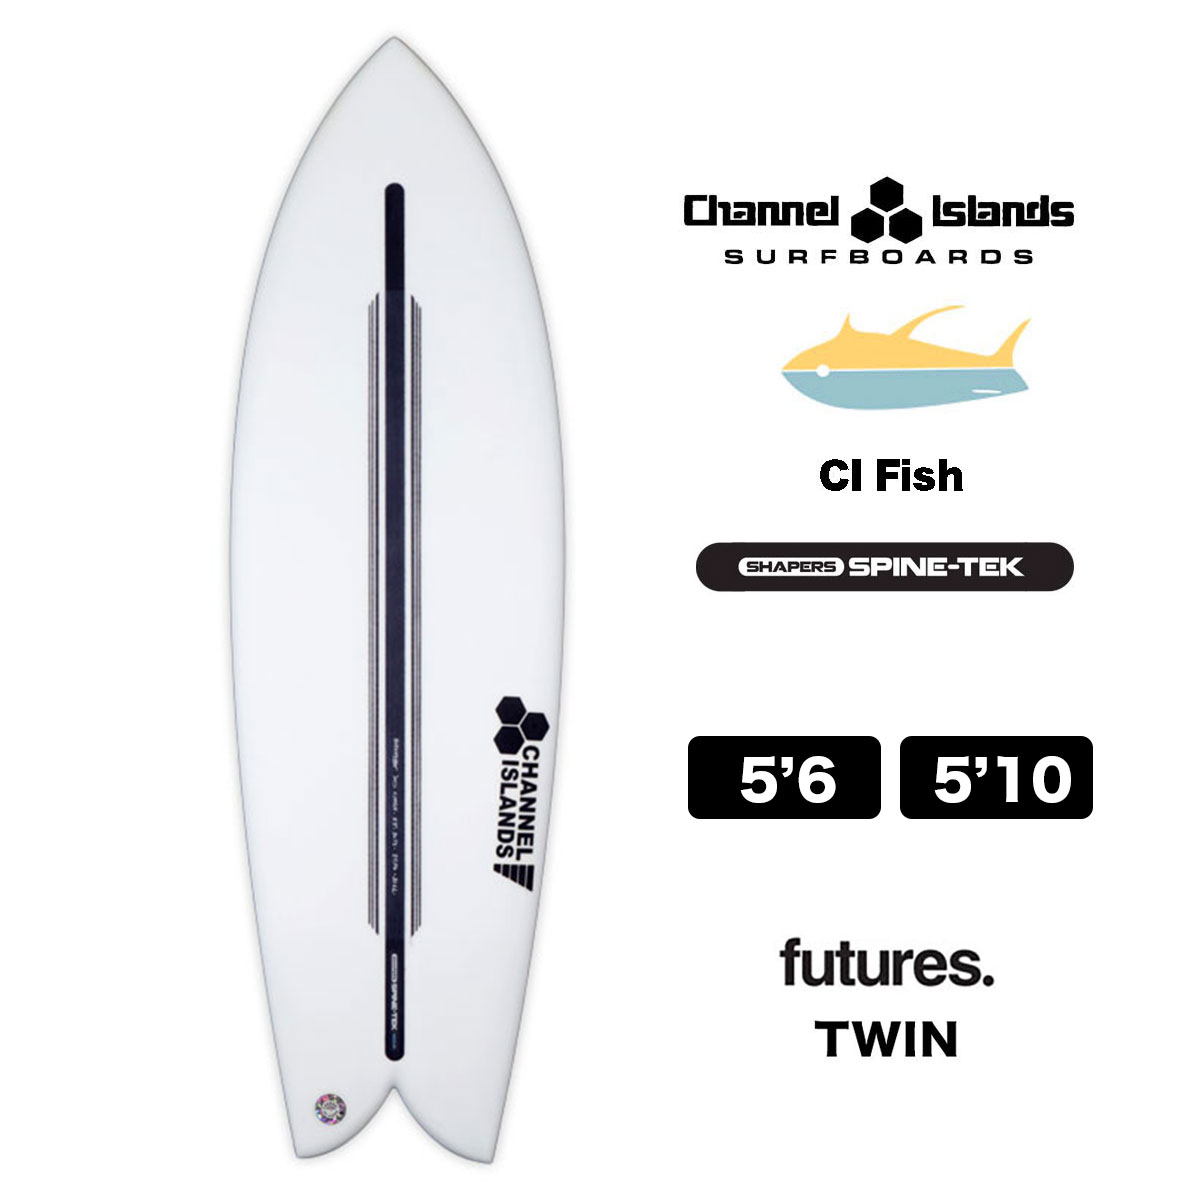 【10%OFF】チャンネルアイランド シーアイフィッシュ Channel Islands CI FISH SPINE-TEK 5.6 / 5.10  スパインテック 5'6 / 5'10 サーフボード サーフィン futures ツインTWIN-ジャックオーシャンスポーツ